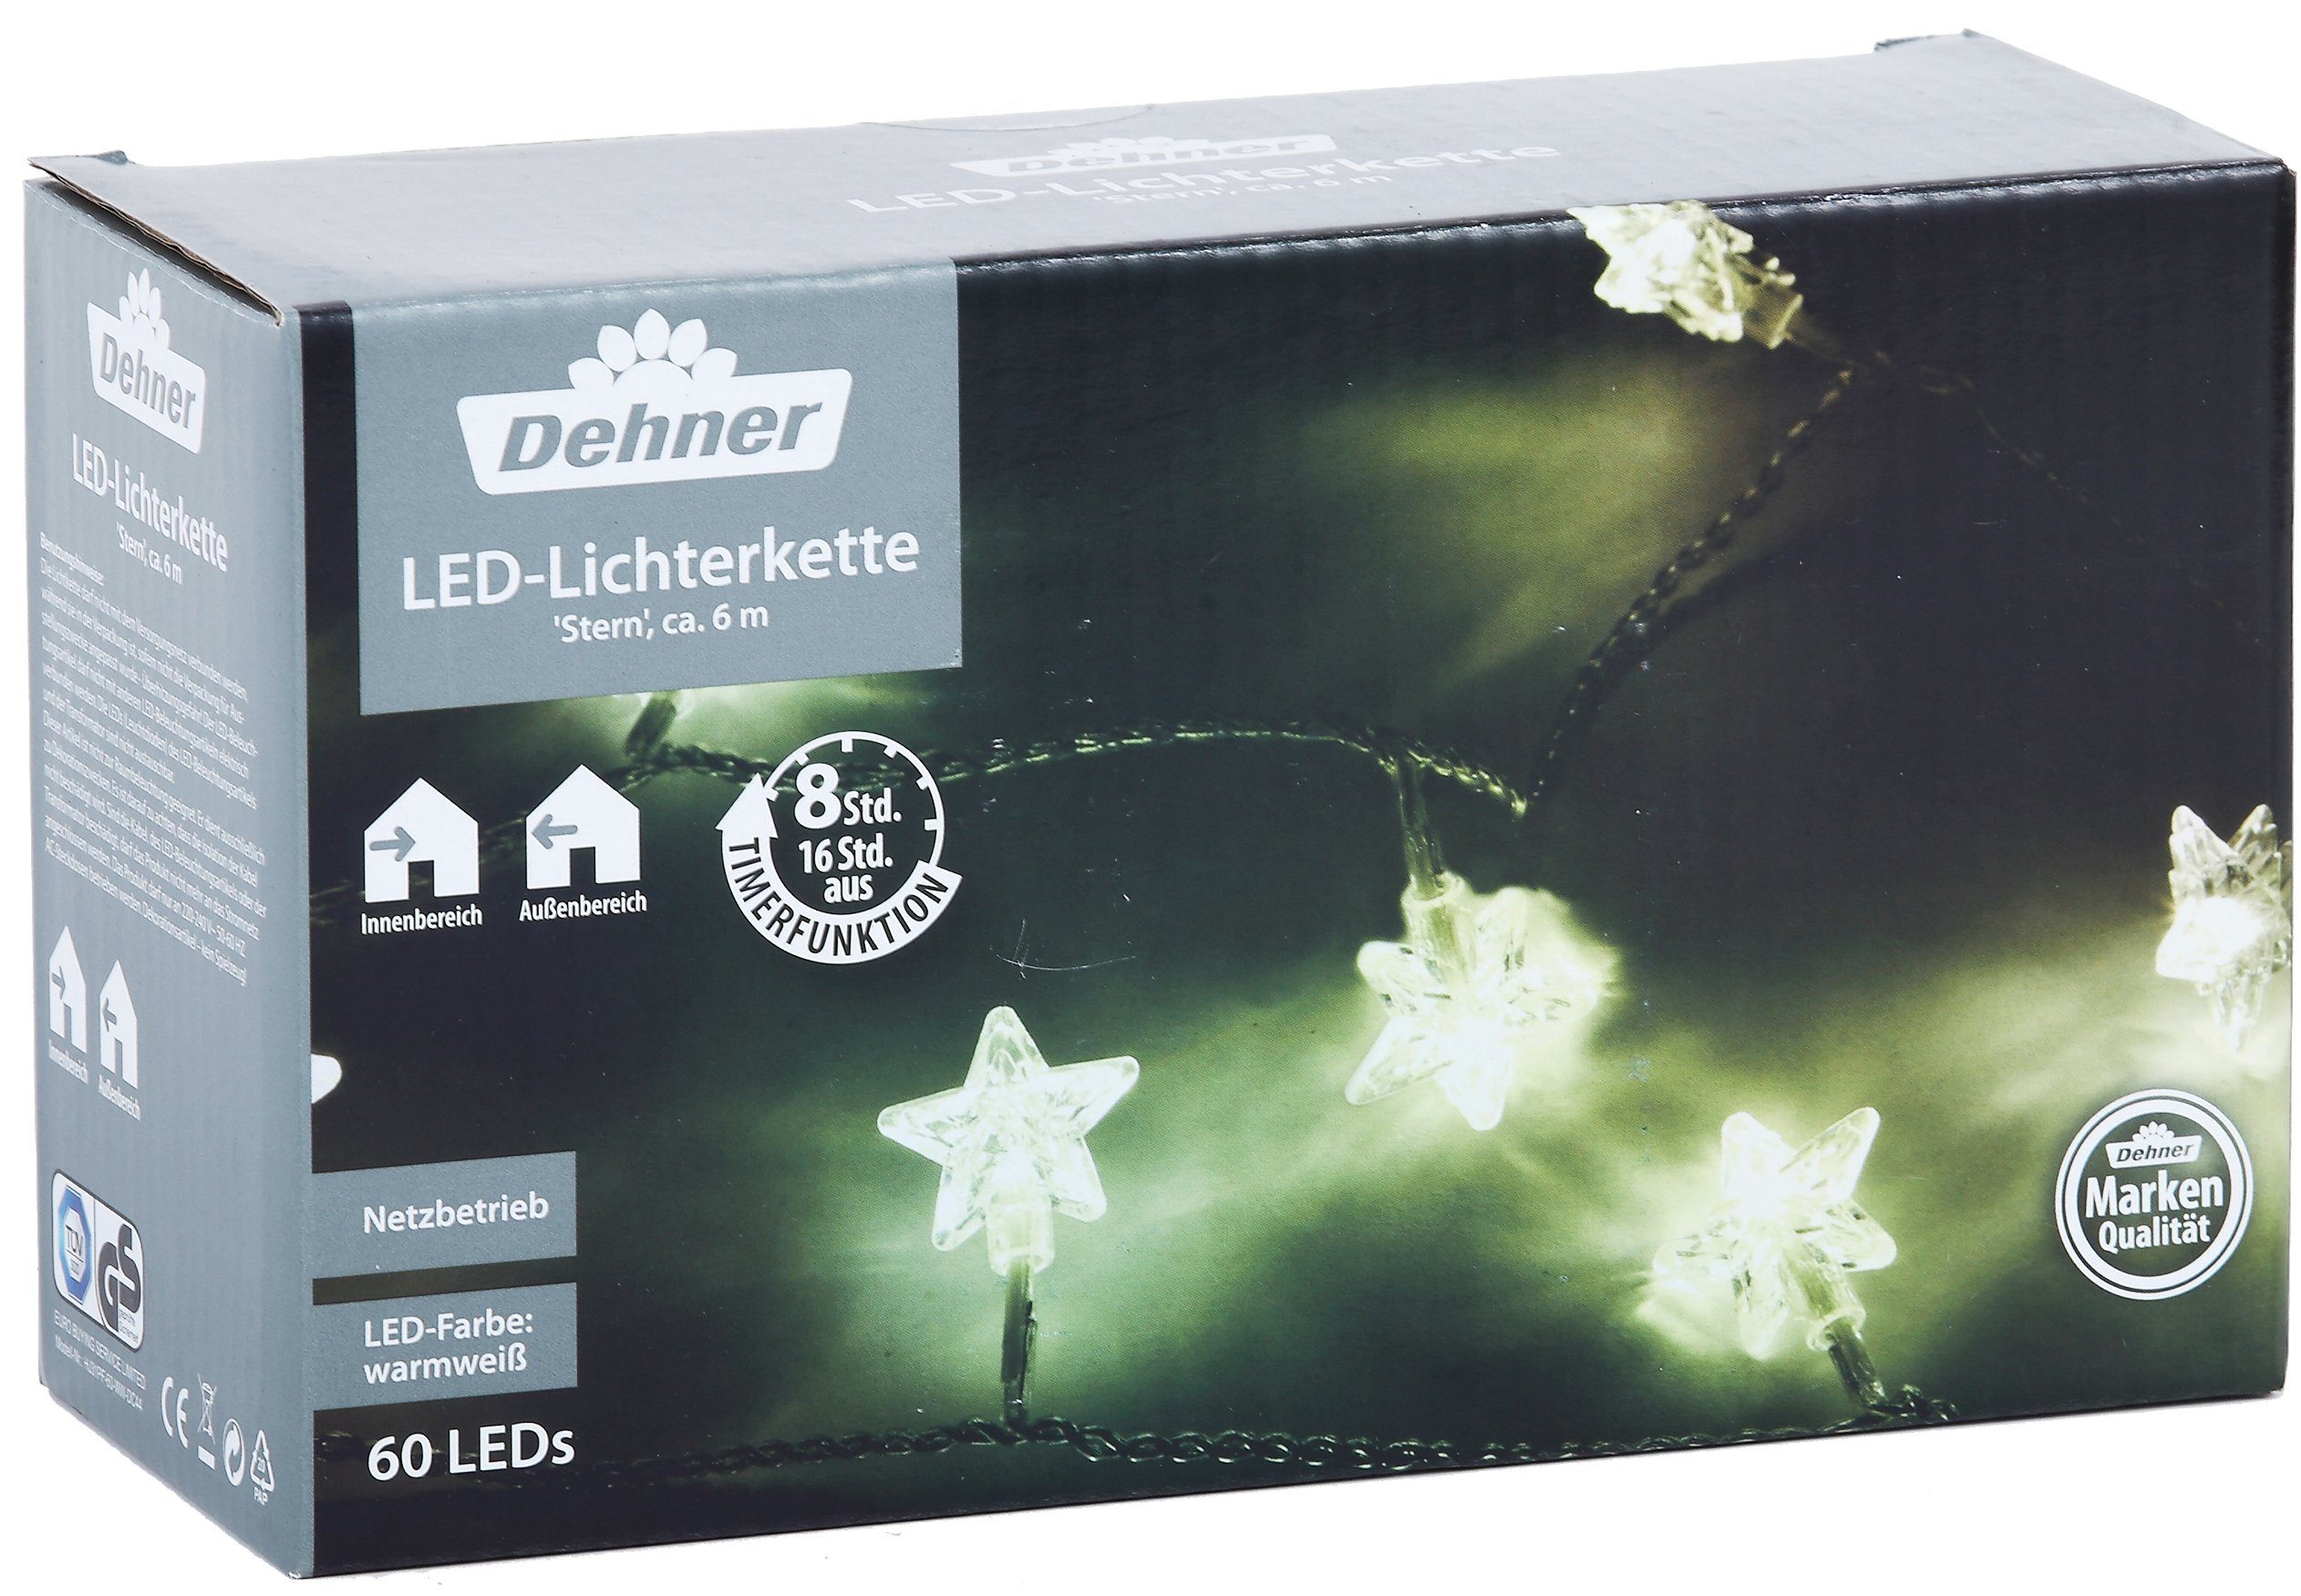 Dehner Lichterkette Stern, W cm, LED 590 Lichterkette 60 LEDs, 3.6